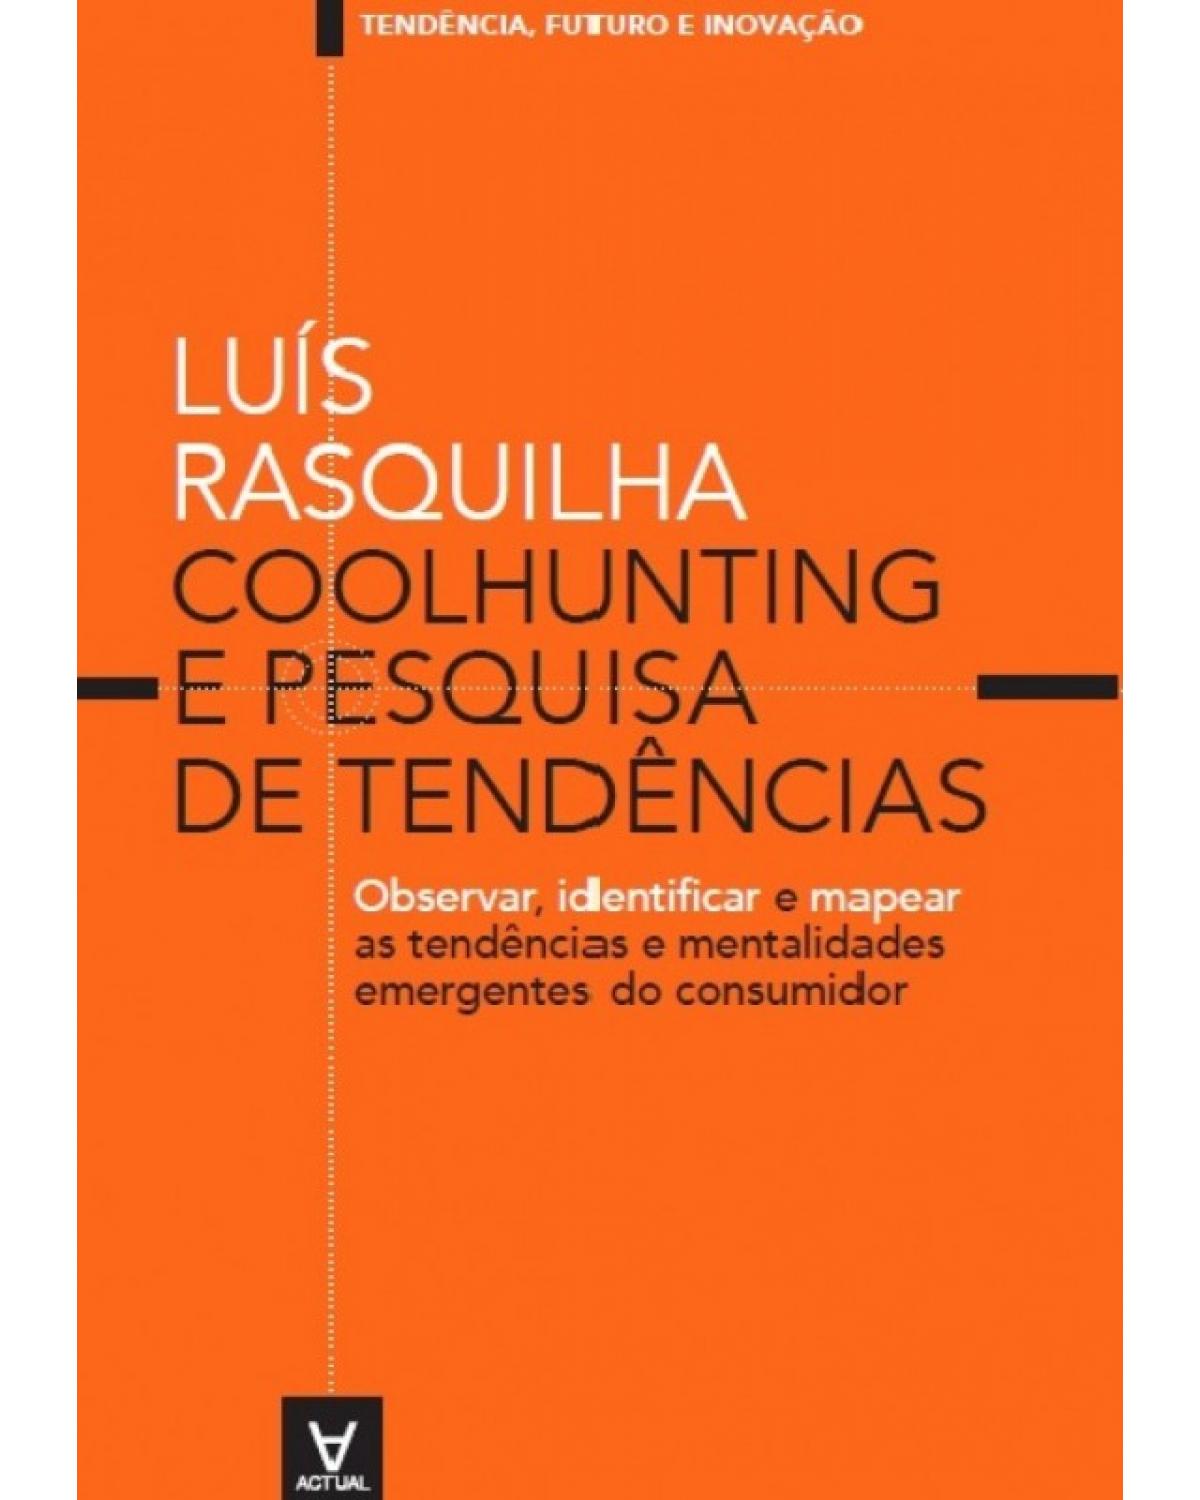 Coolhunting e pesquisa de tendências - observar, identificar e mapear as tendências e mentalidades emergentes do consumidor - 1ª Edição | 2015